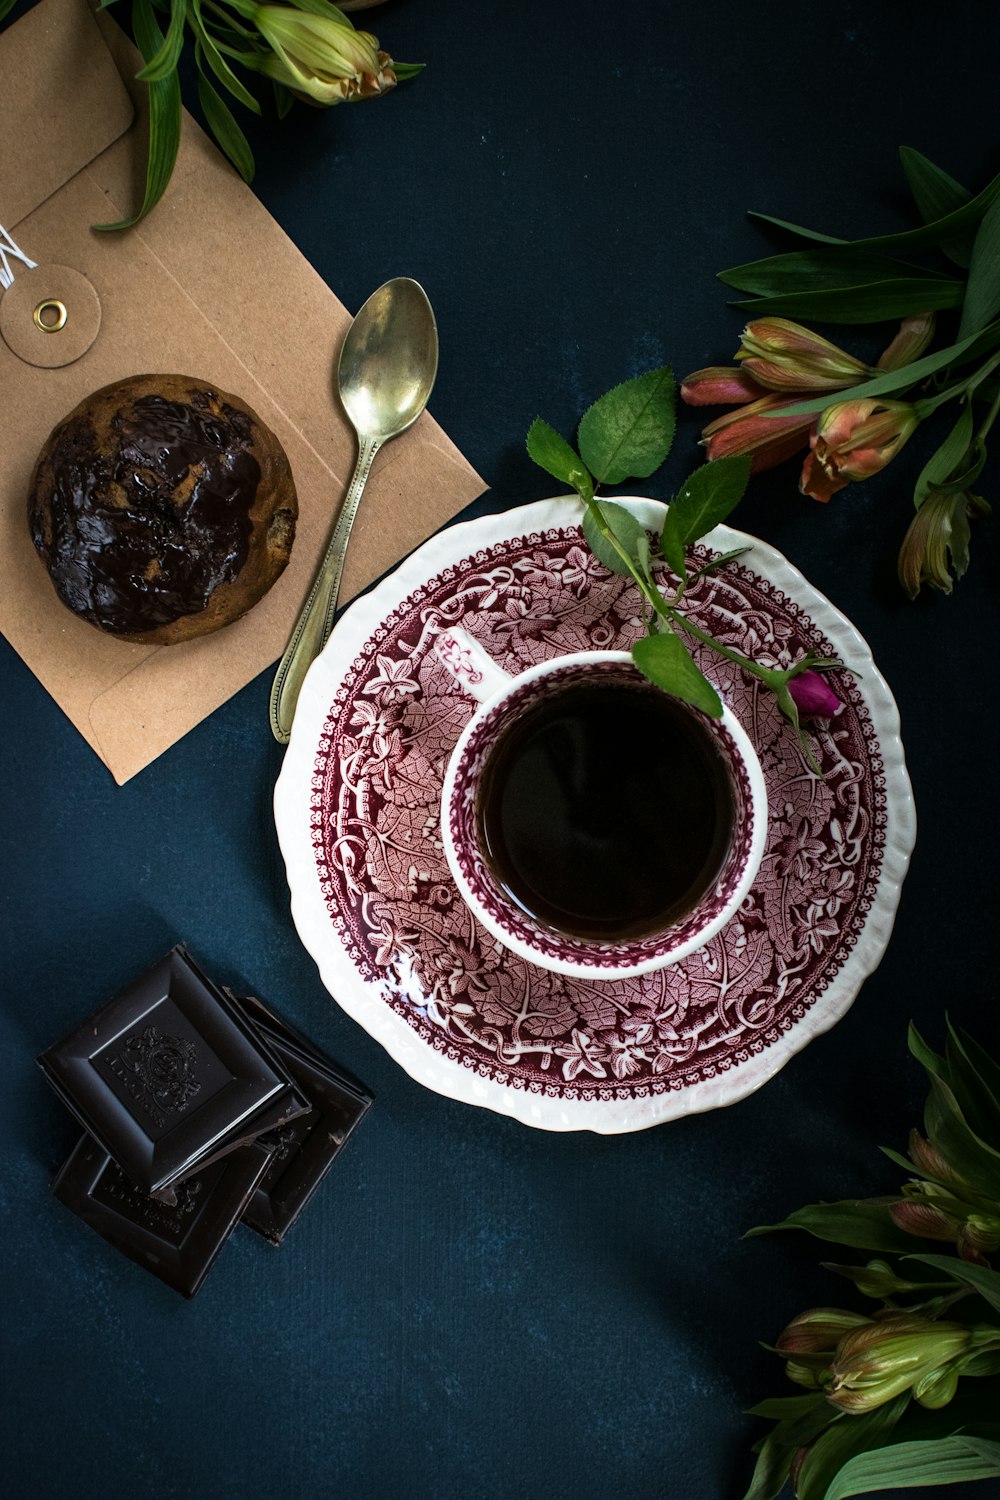 Café servido en taza de cerámica blanca y roja junto a cupcake de chocolate